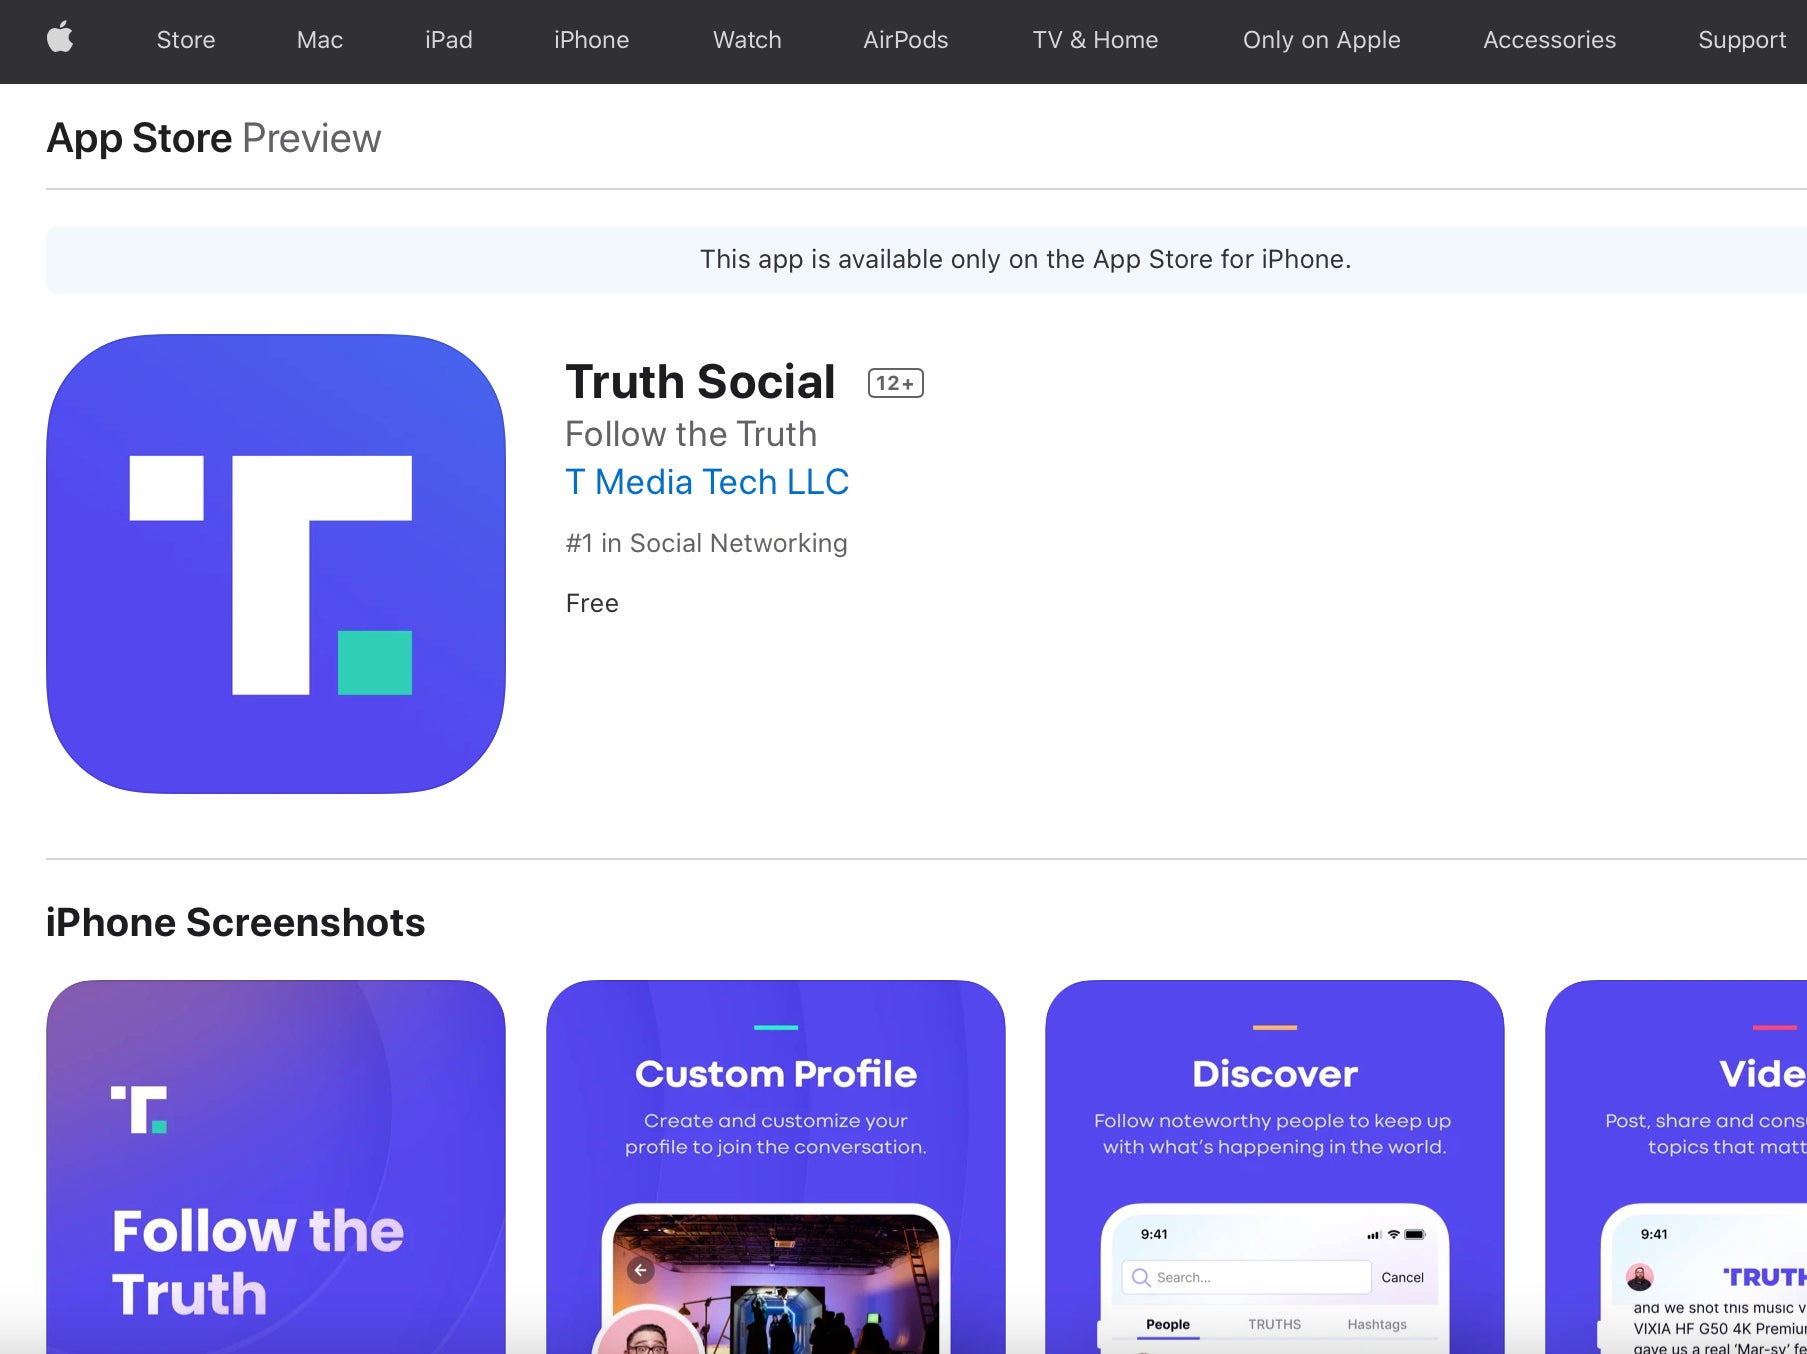 La aplicación Truth Social tal y como aparece en la App Store de Apple